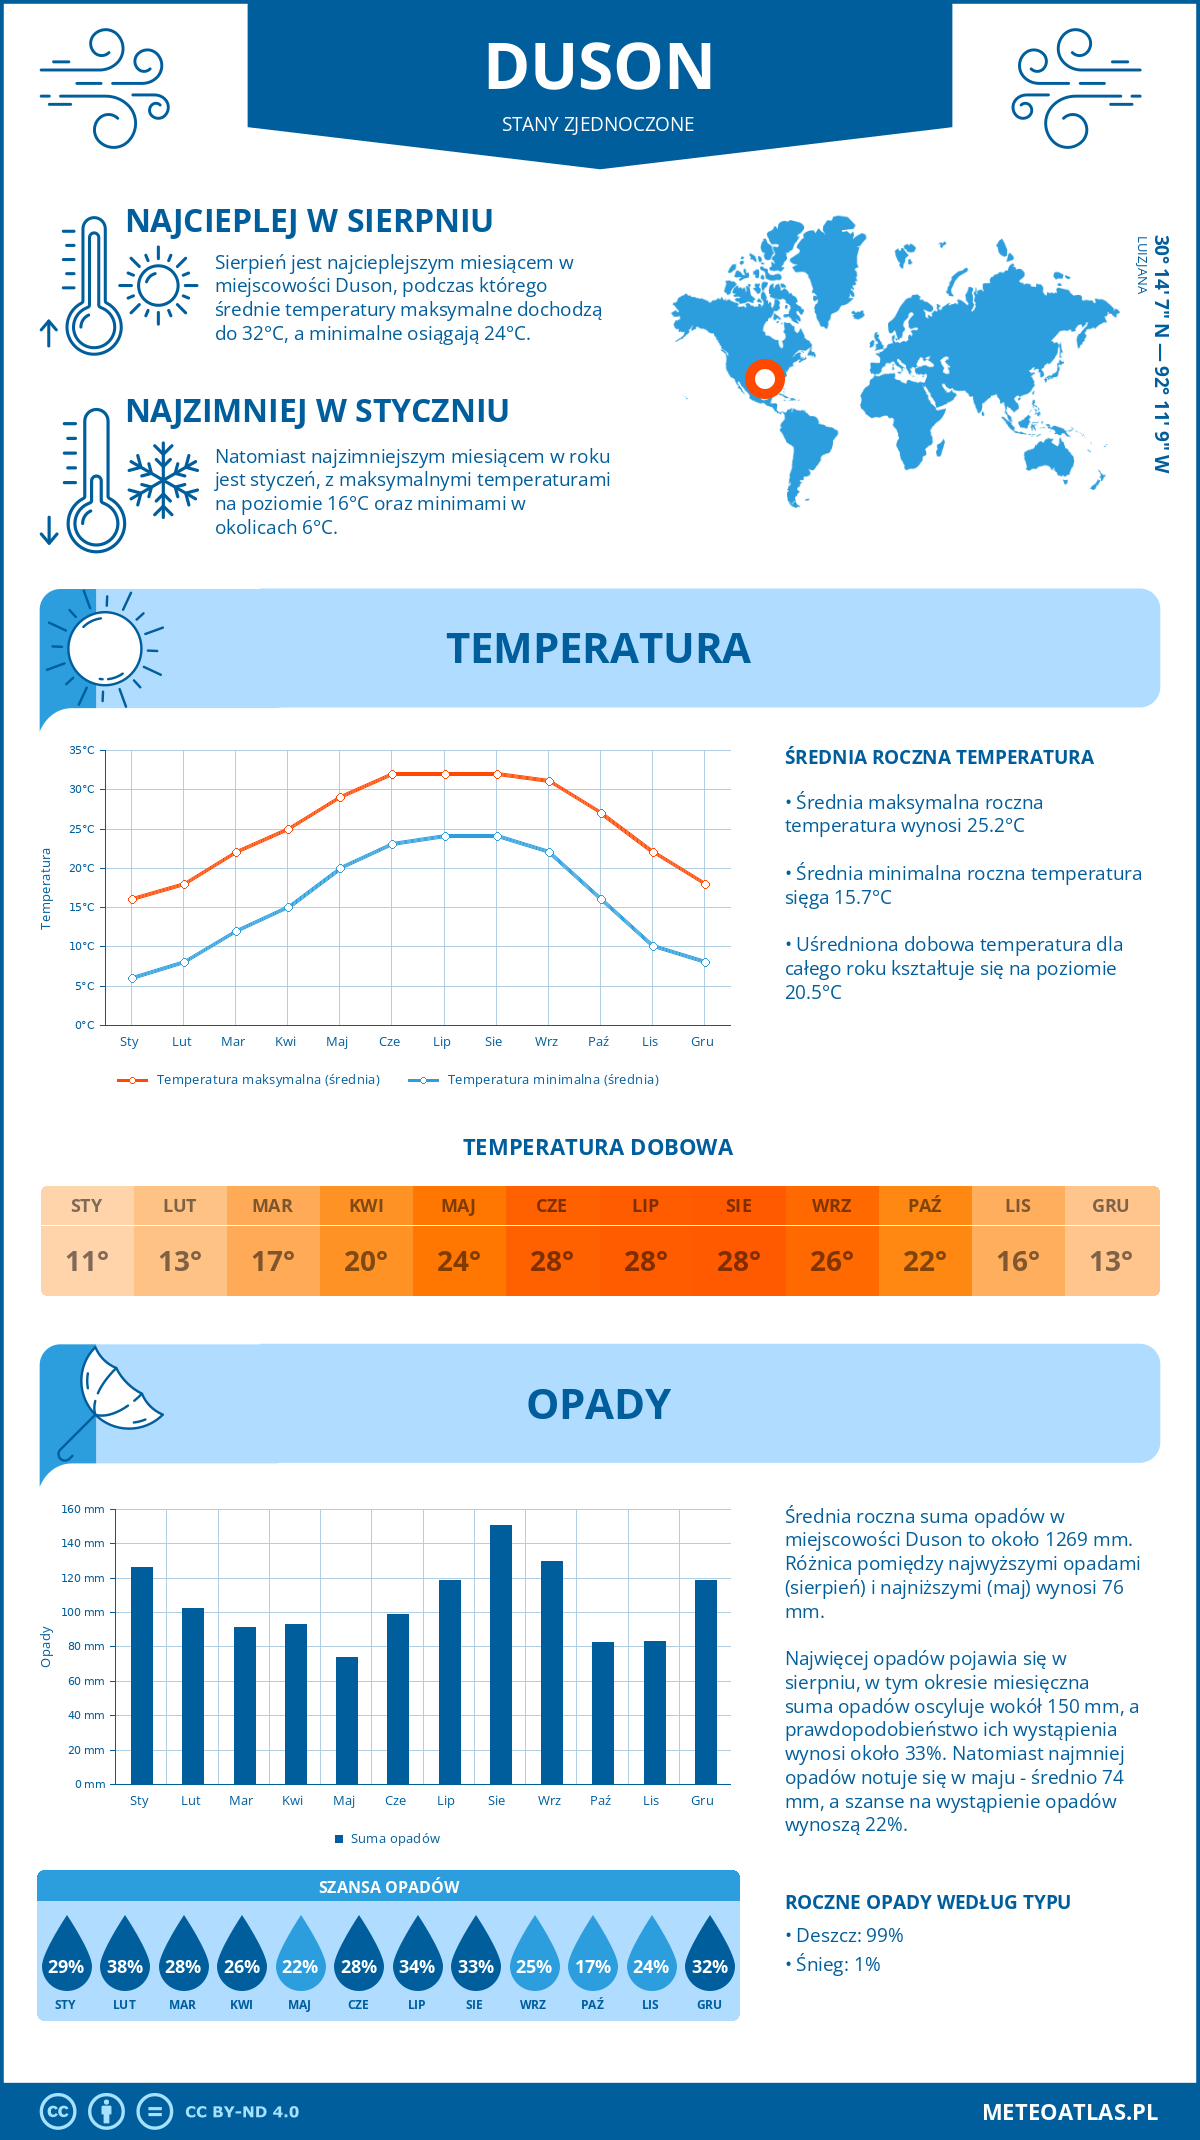 Pogoda Duson (Stany Zjednoczone). Temperatura oraz opady.